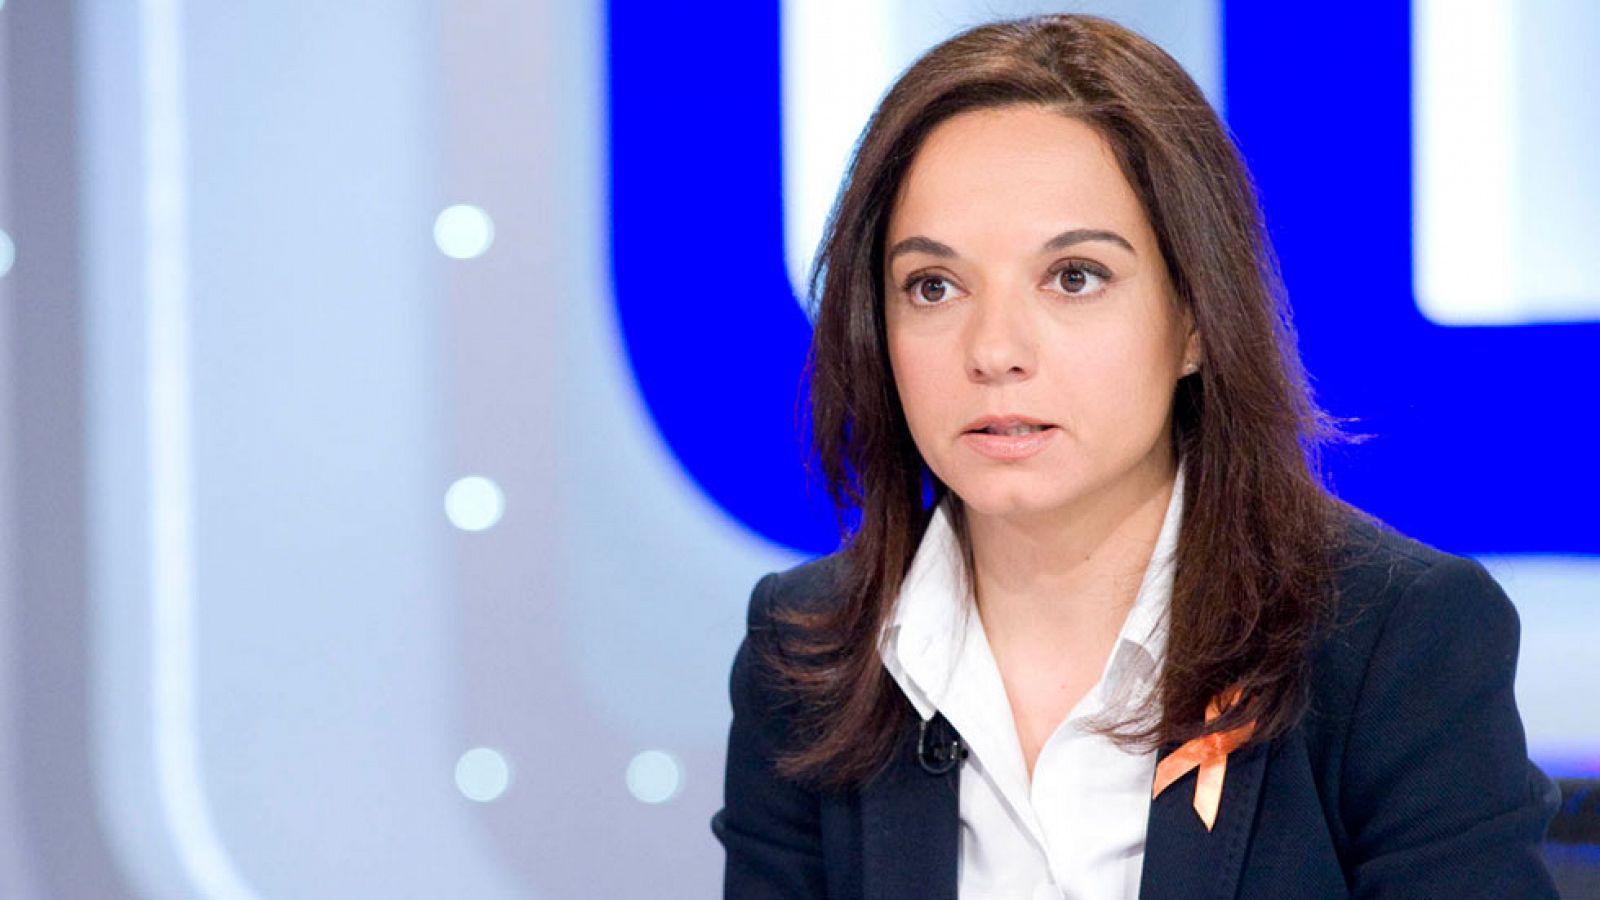 La secretaria general del PSM, Sara Hernández, asegura que el liderazgo de Sánchez "no está en cuestión"